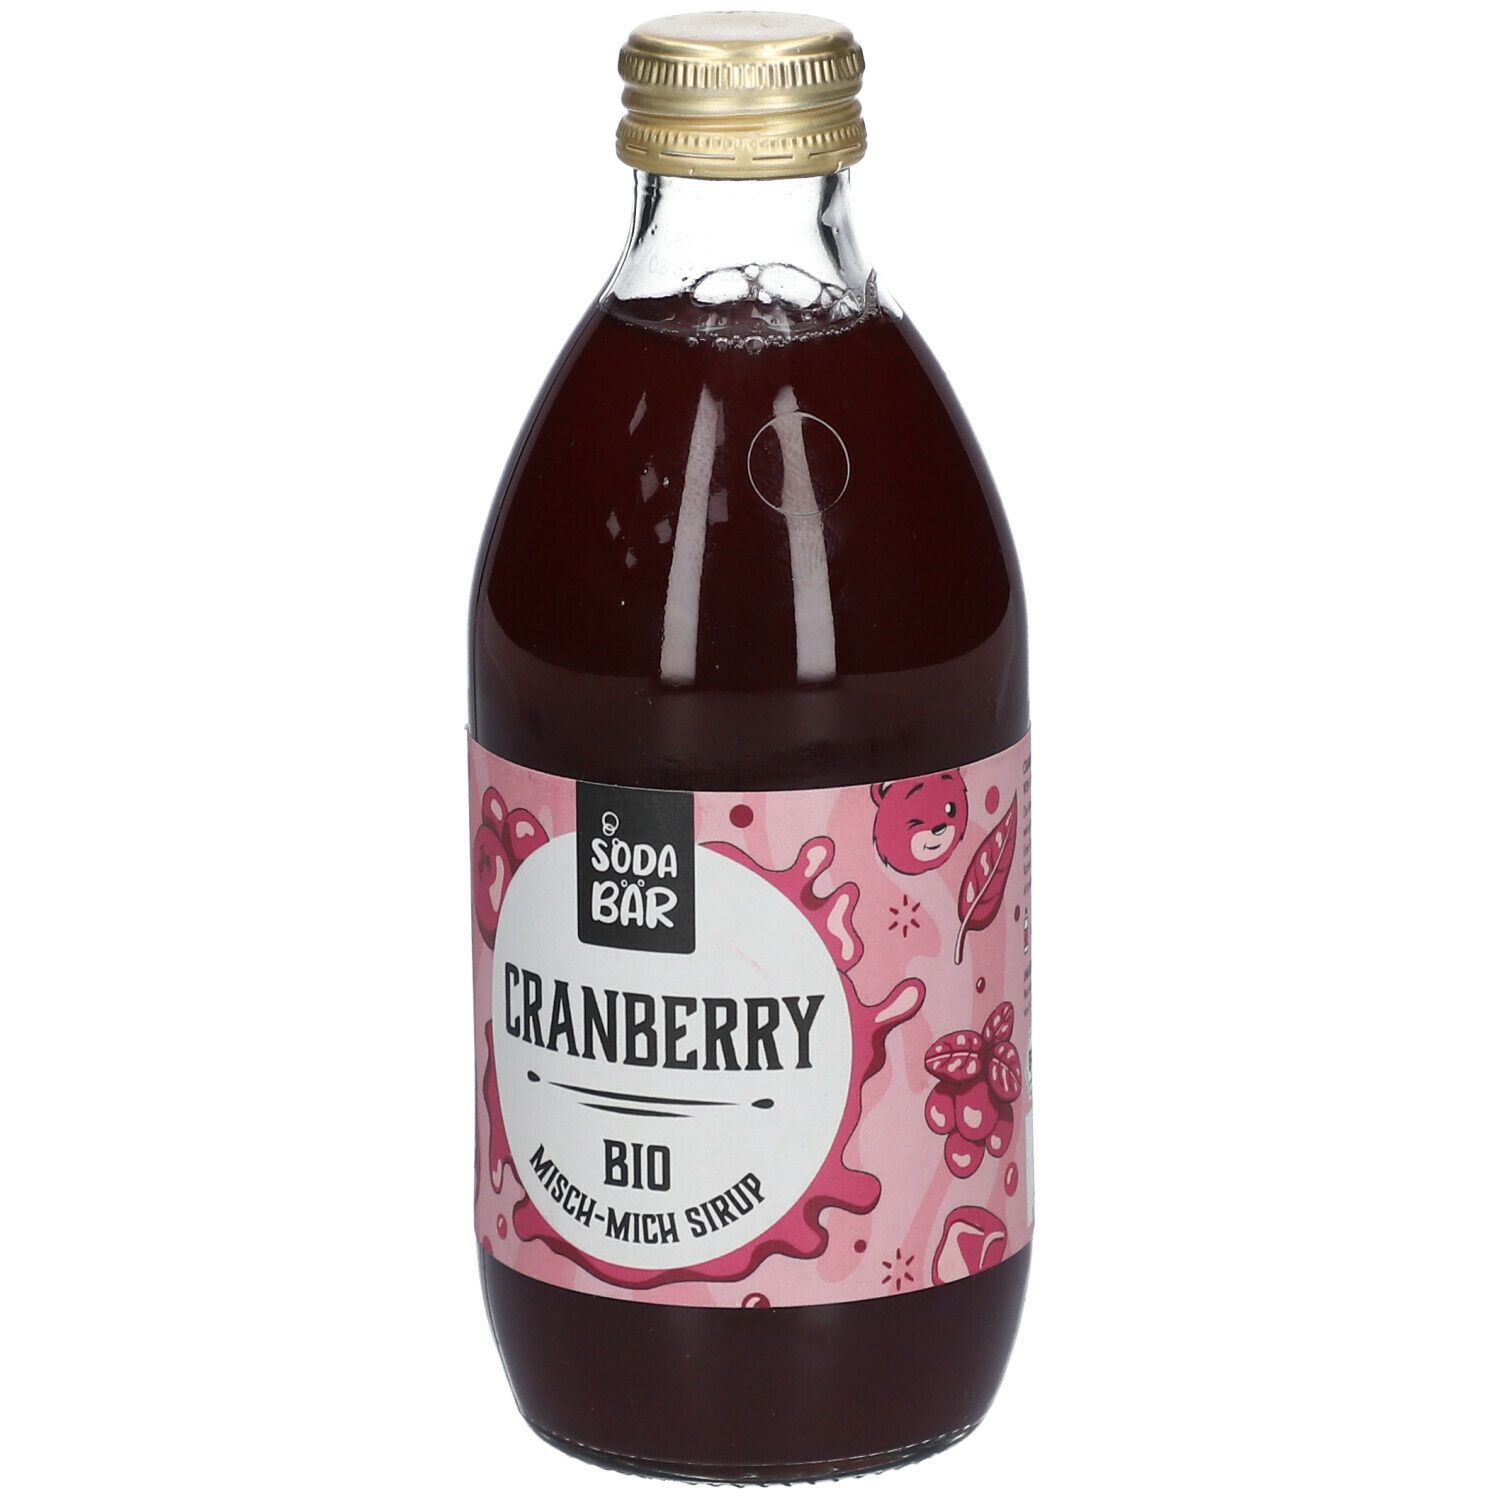 SODABÄR Cranberry Bio Misch-Mich Sirup